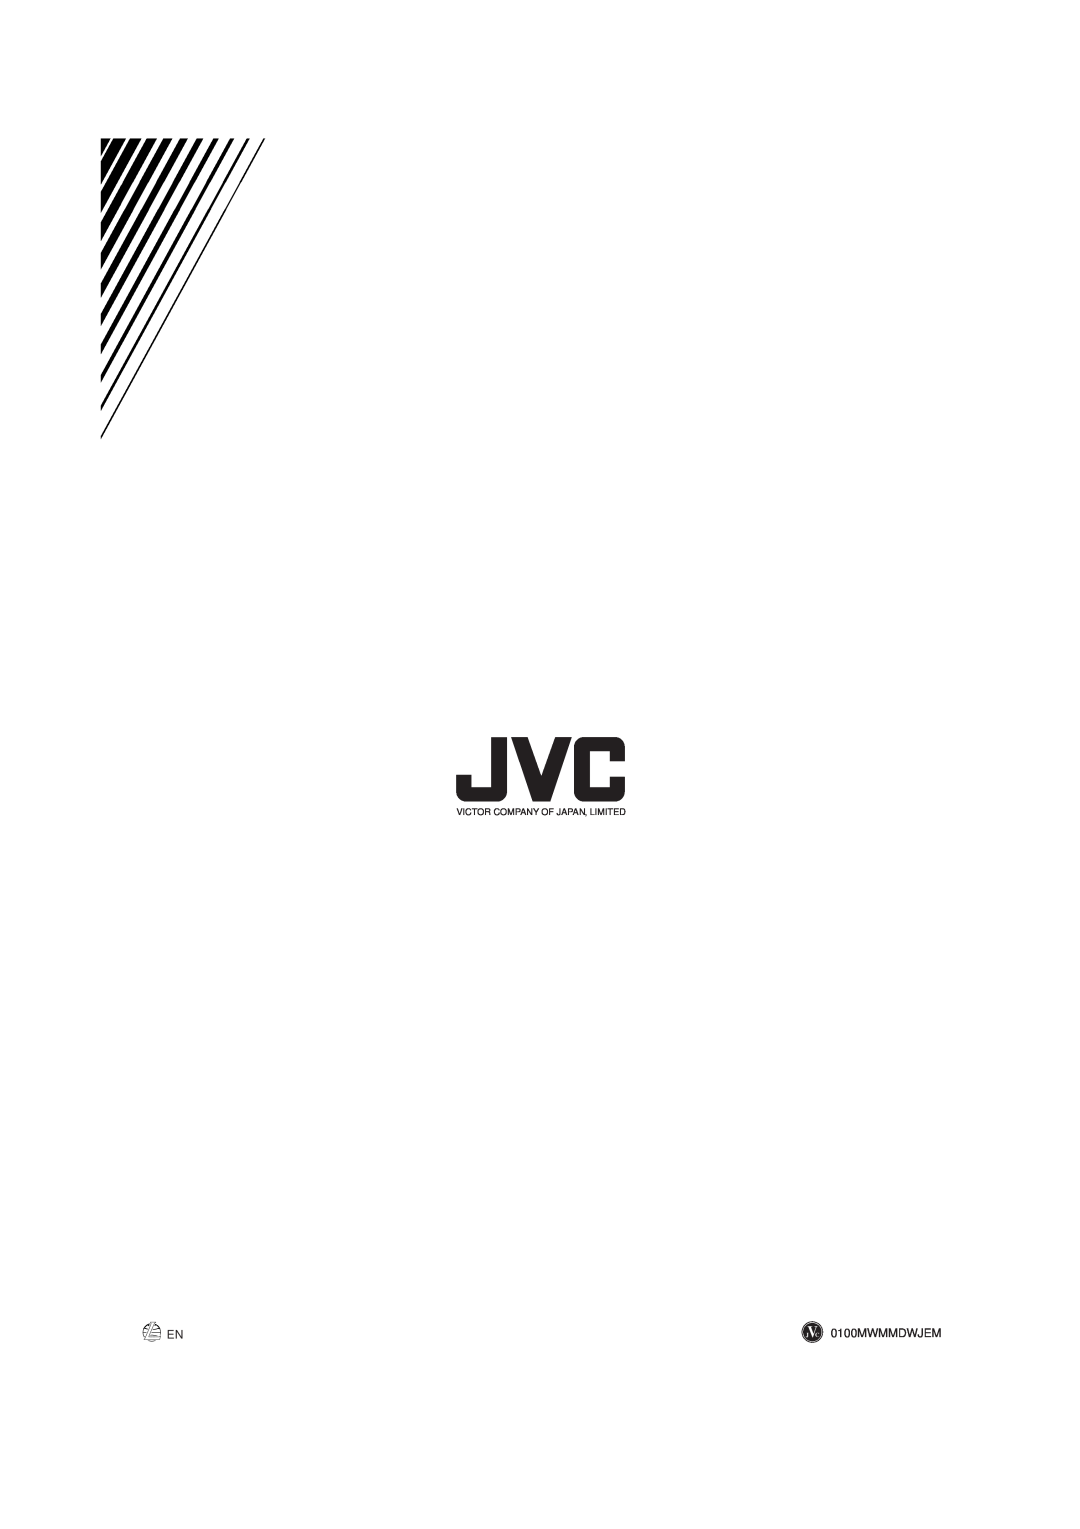 JVC MX-J900 manual 0100MWMMDWJEM, Victor Company Of Japan, Limited 